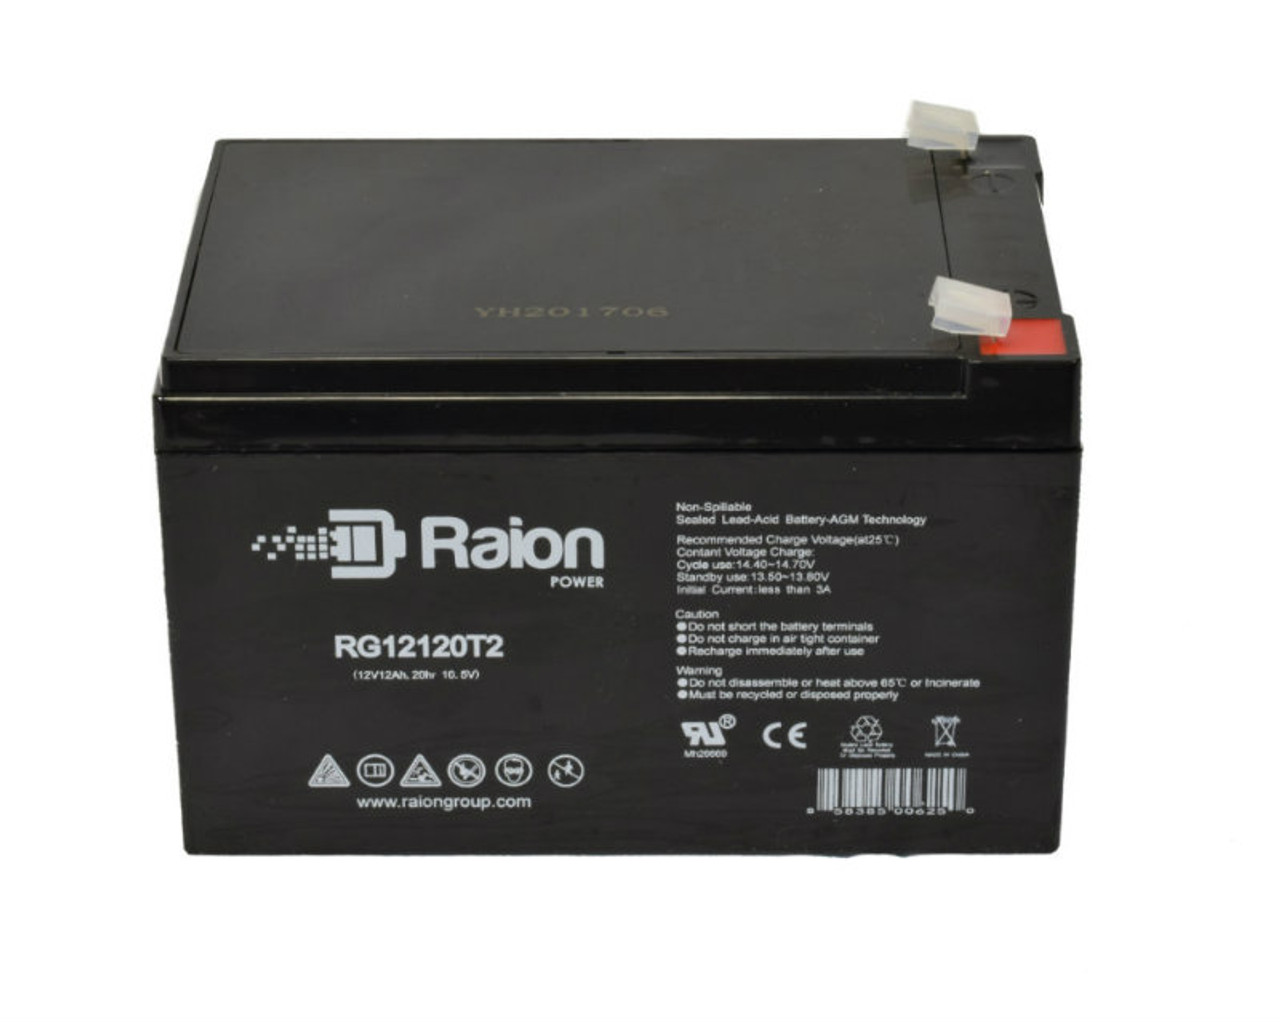 Raion Power RG12120T2 SLA Battery for Bladez eX 350